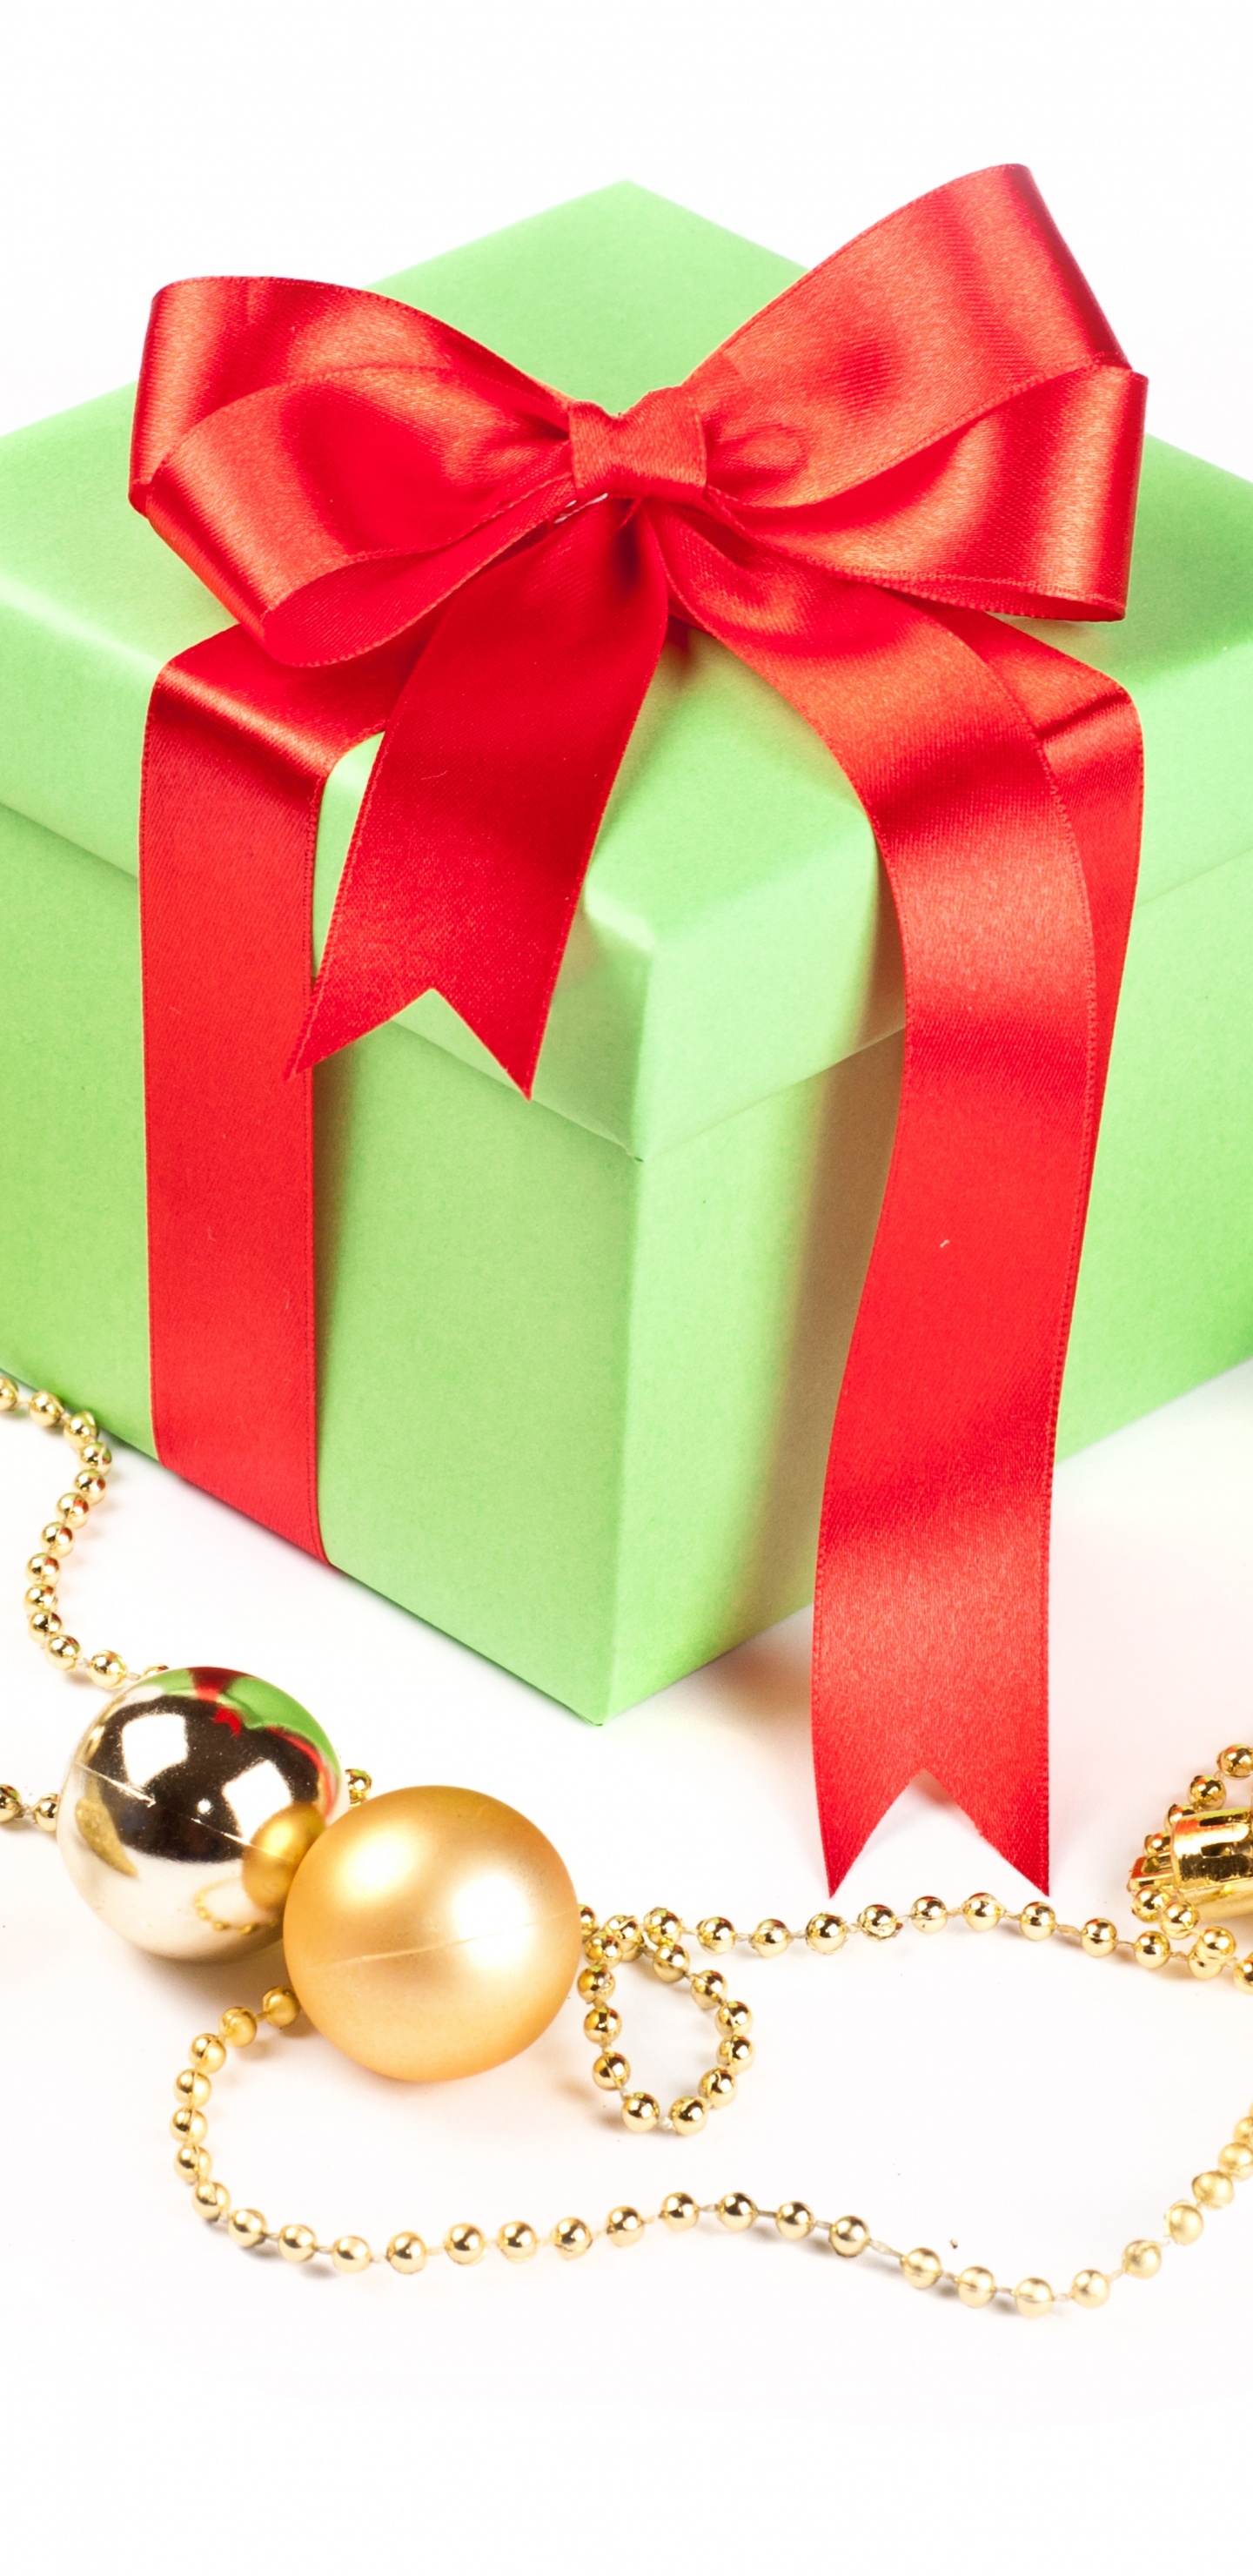 圣诞节的装饰品, 礼物, 圣诞节那天, 新的一年, 礼品包装 壁纸 1440x2960 允许